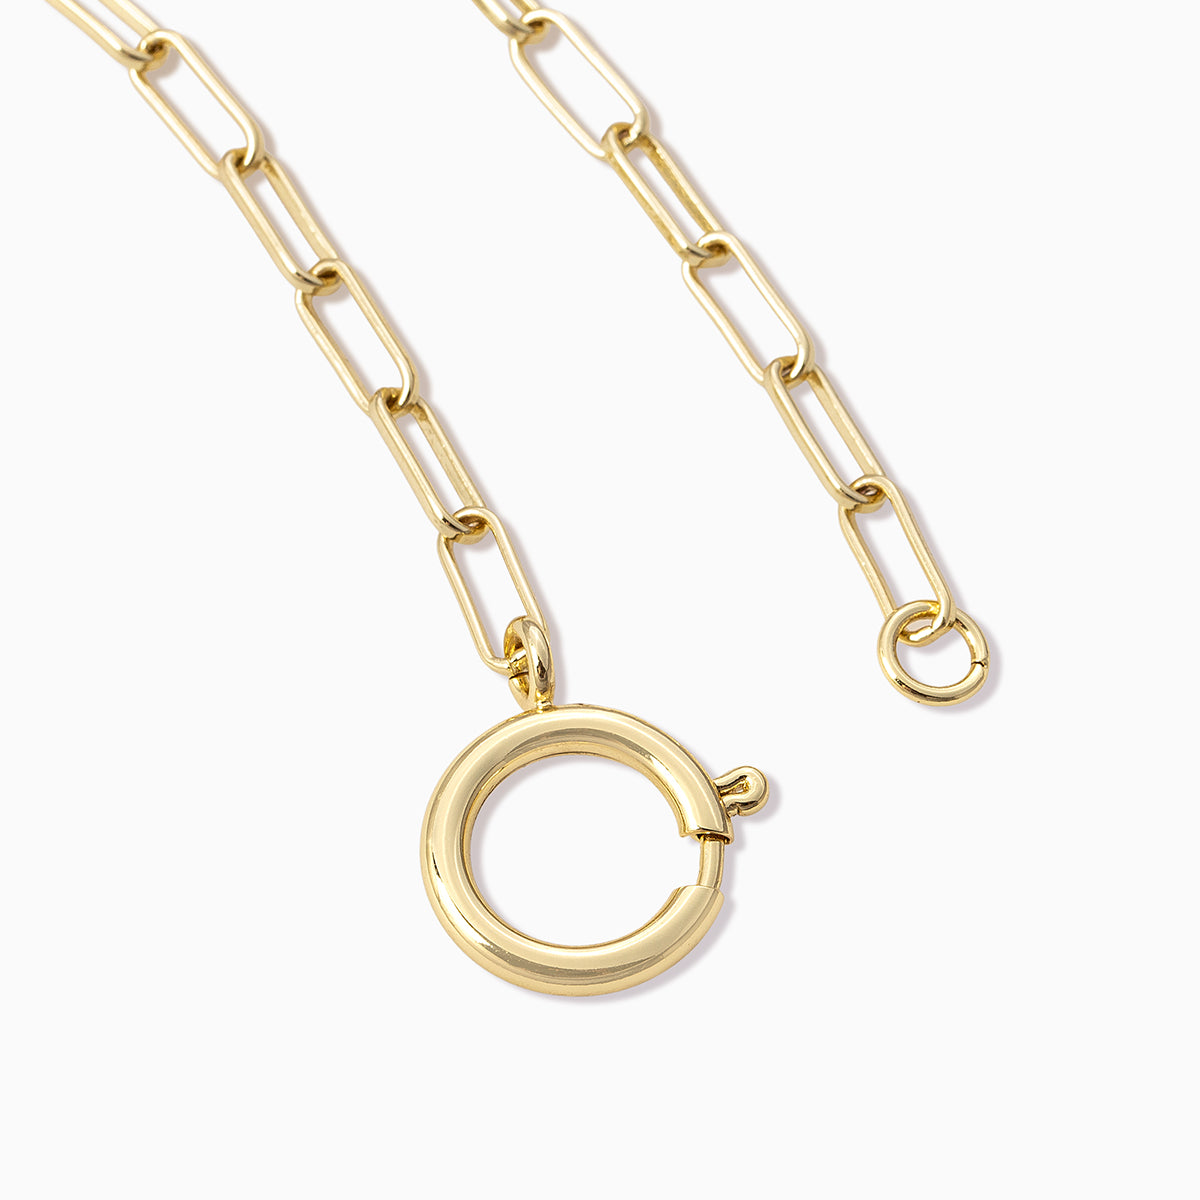 Charm Bracelet | Gold | Product Detail Image | Uncommon James